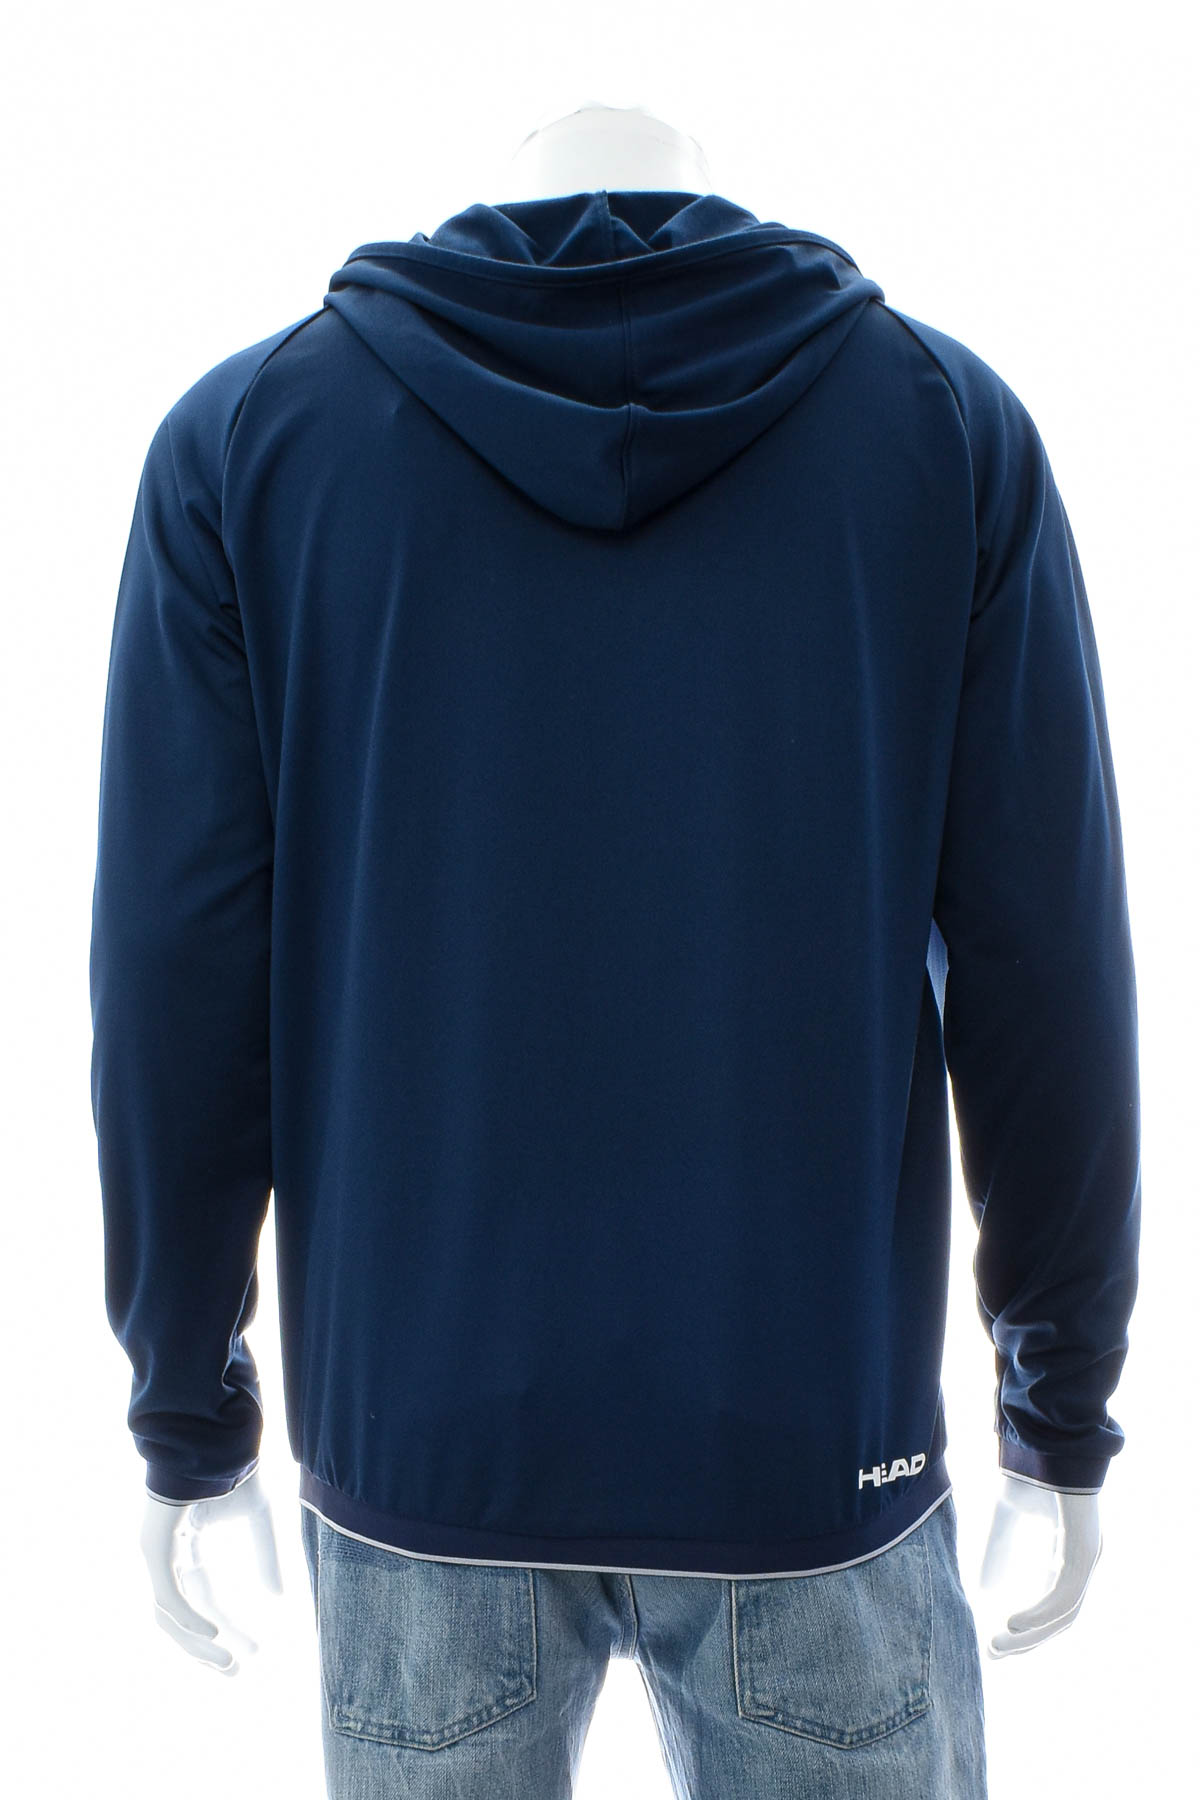 Men's sweatshirt - Head - 1